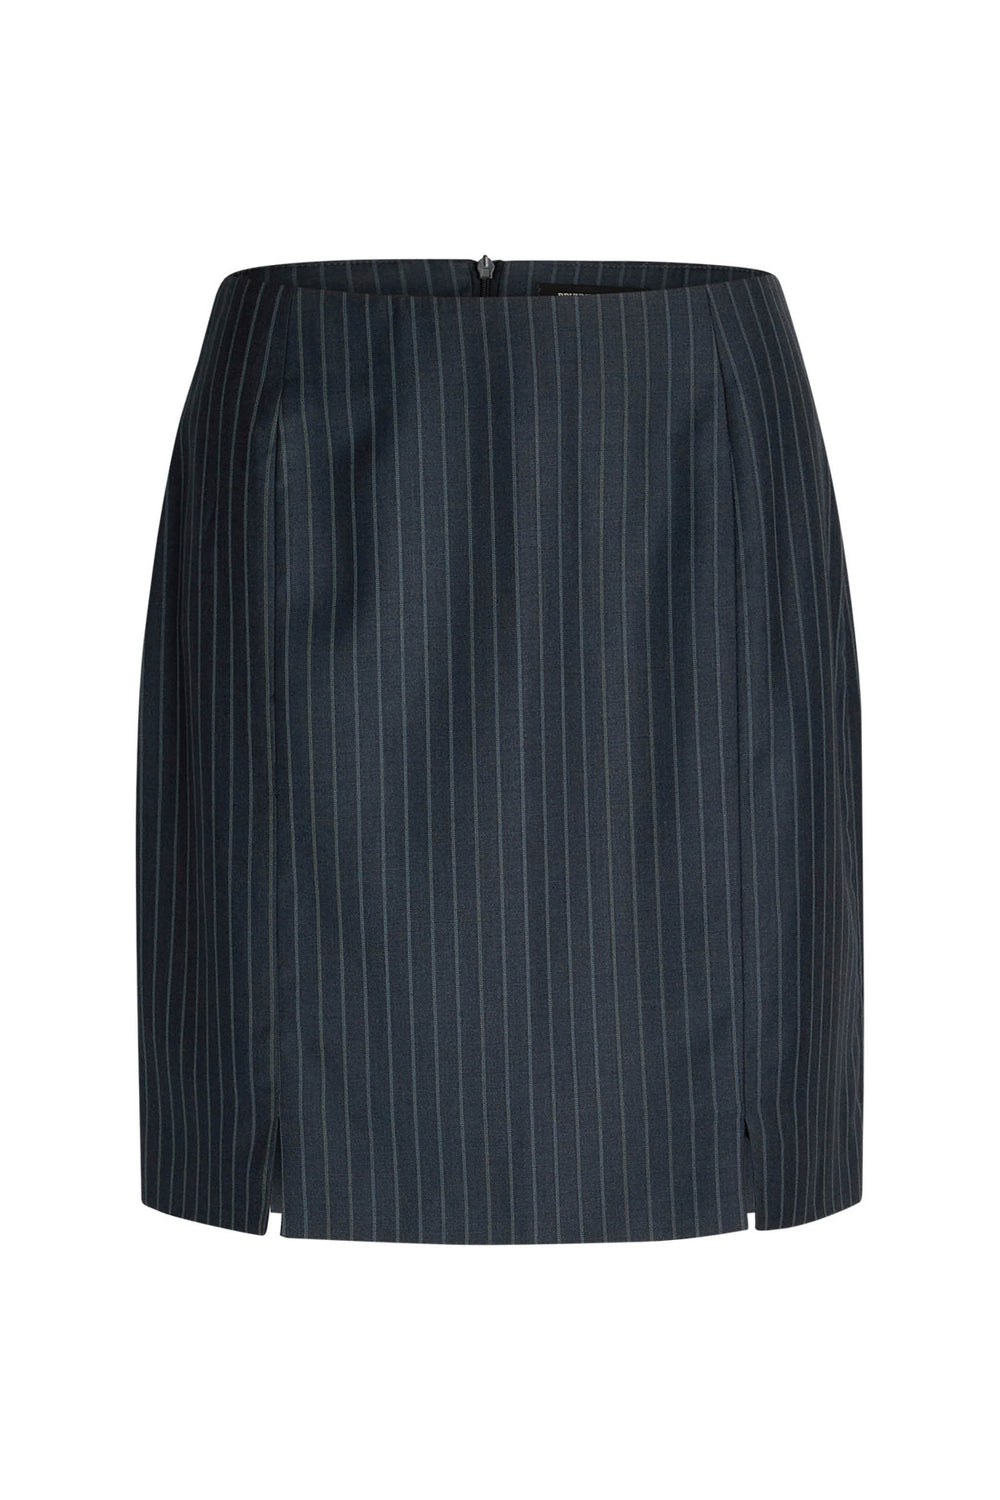 Bruuns Bazaar Women BluestarBBSusan skirt Skirt Blue pinstripe